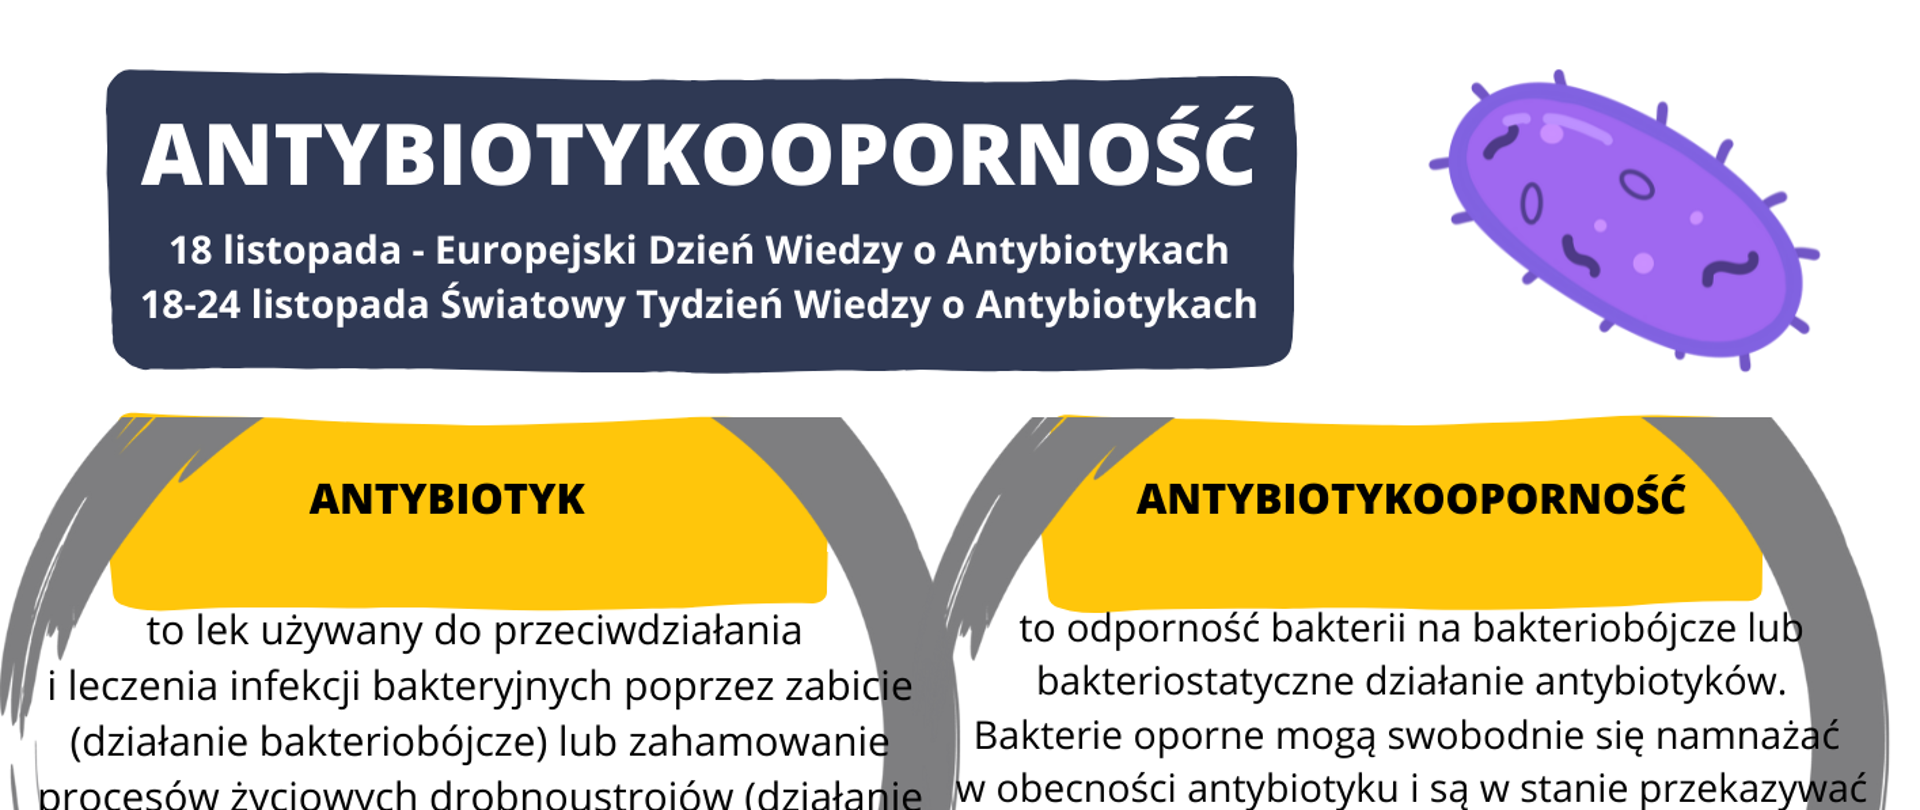 antybiotykooporność